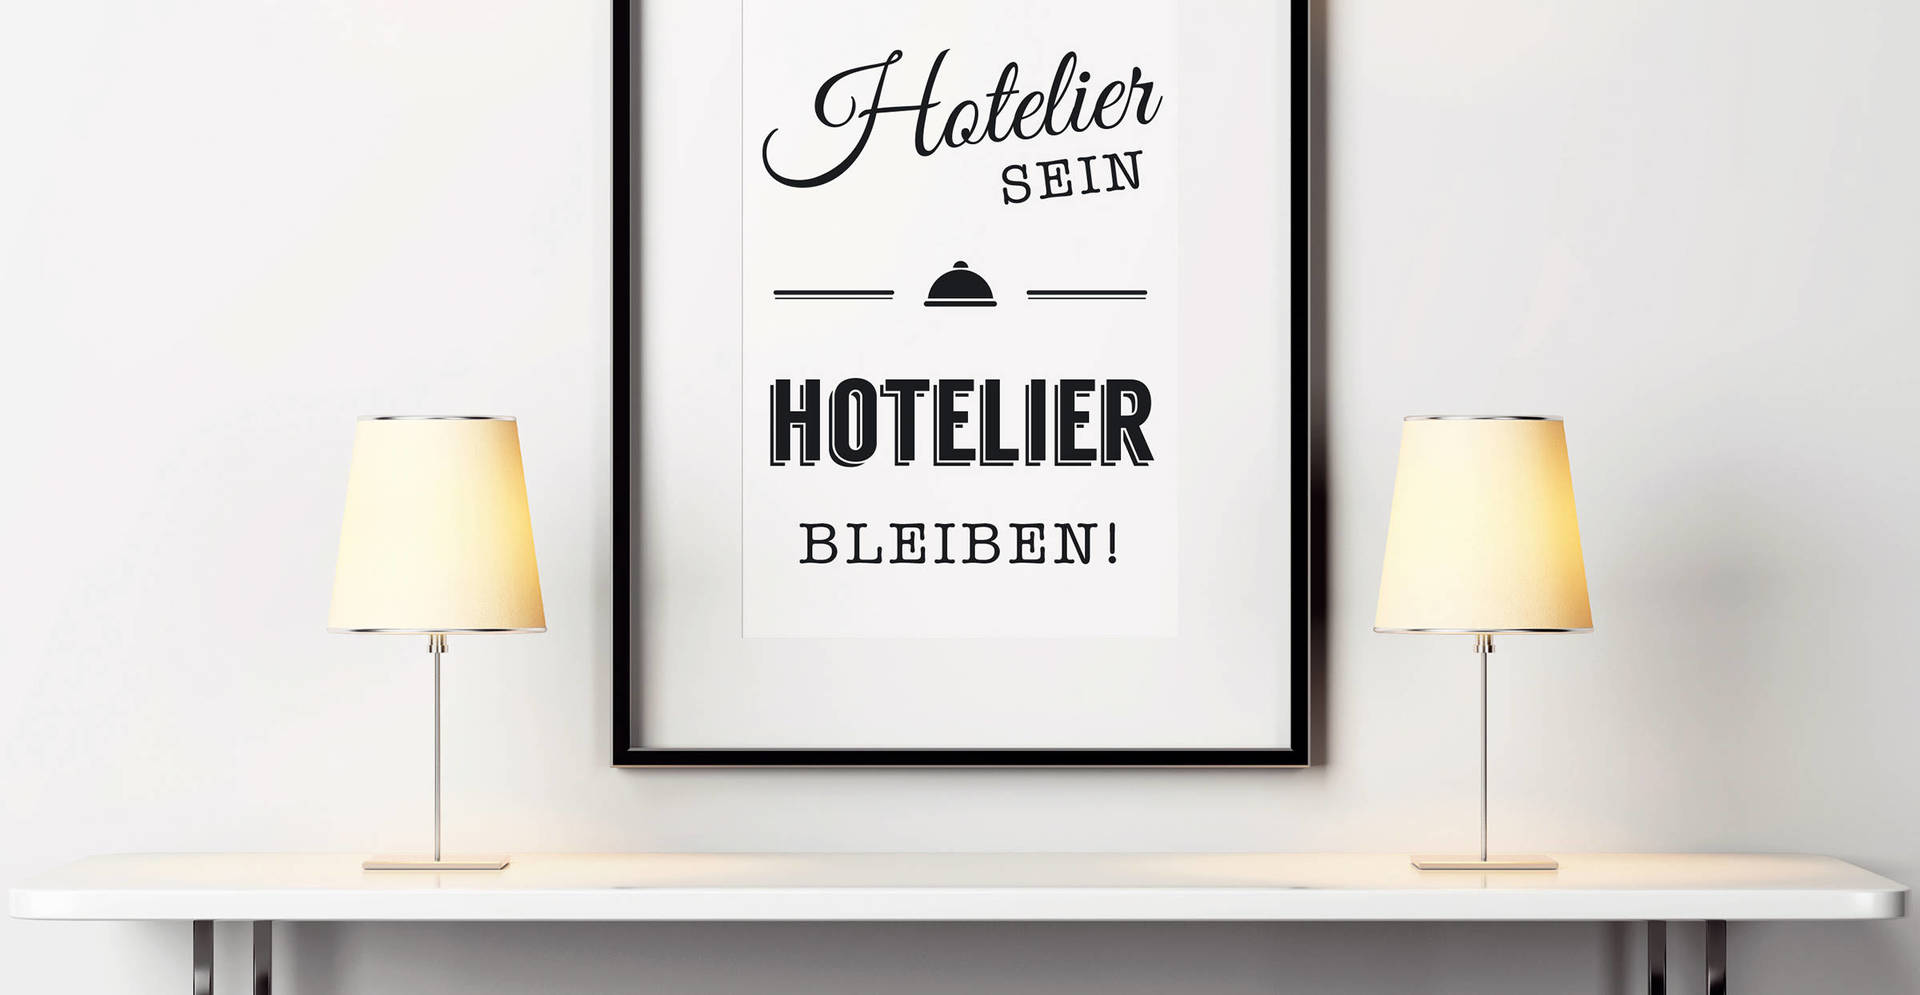 Hotelier sein – Hotelier bleiben